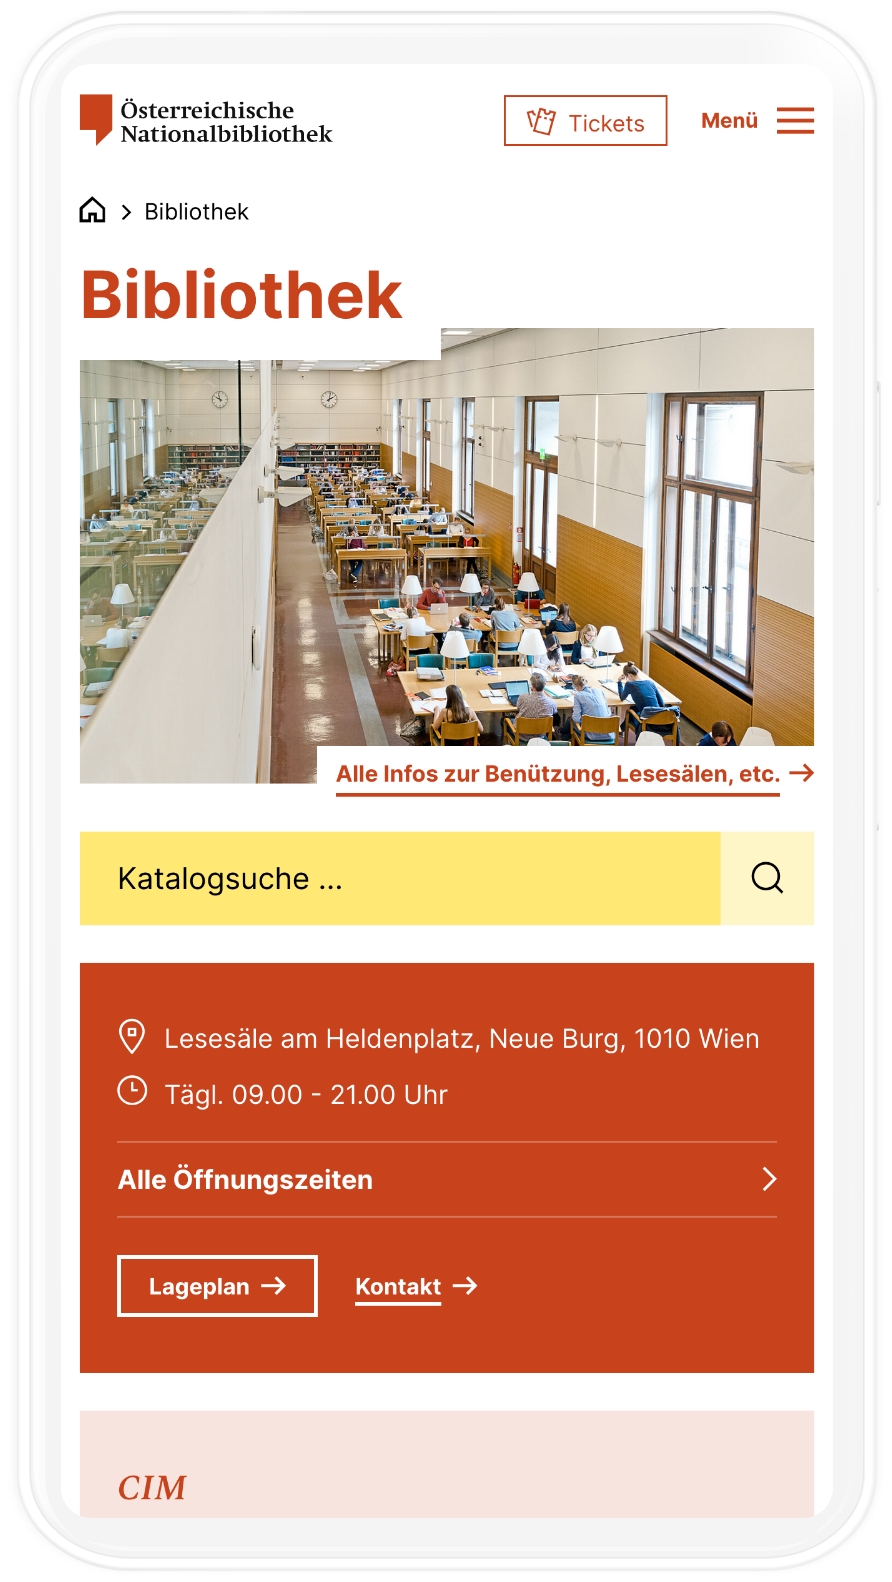 Tablet-Mockup der Bibliotheks-Startseite der Österreichischen Nationalbibliothek